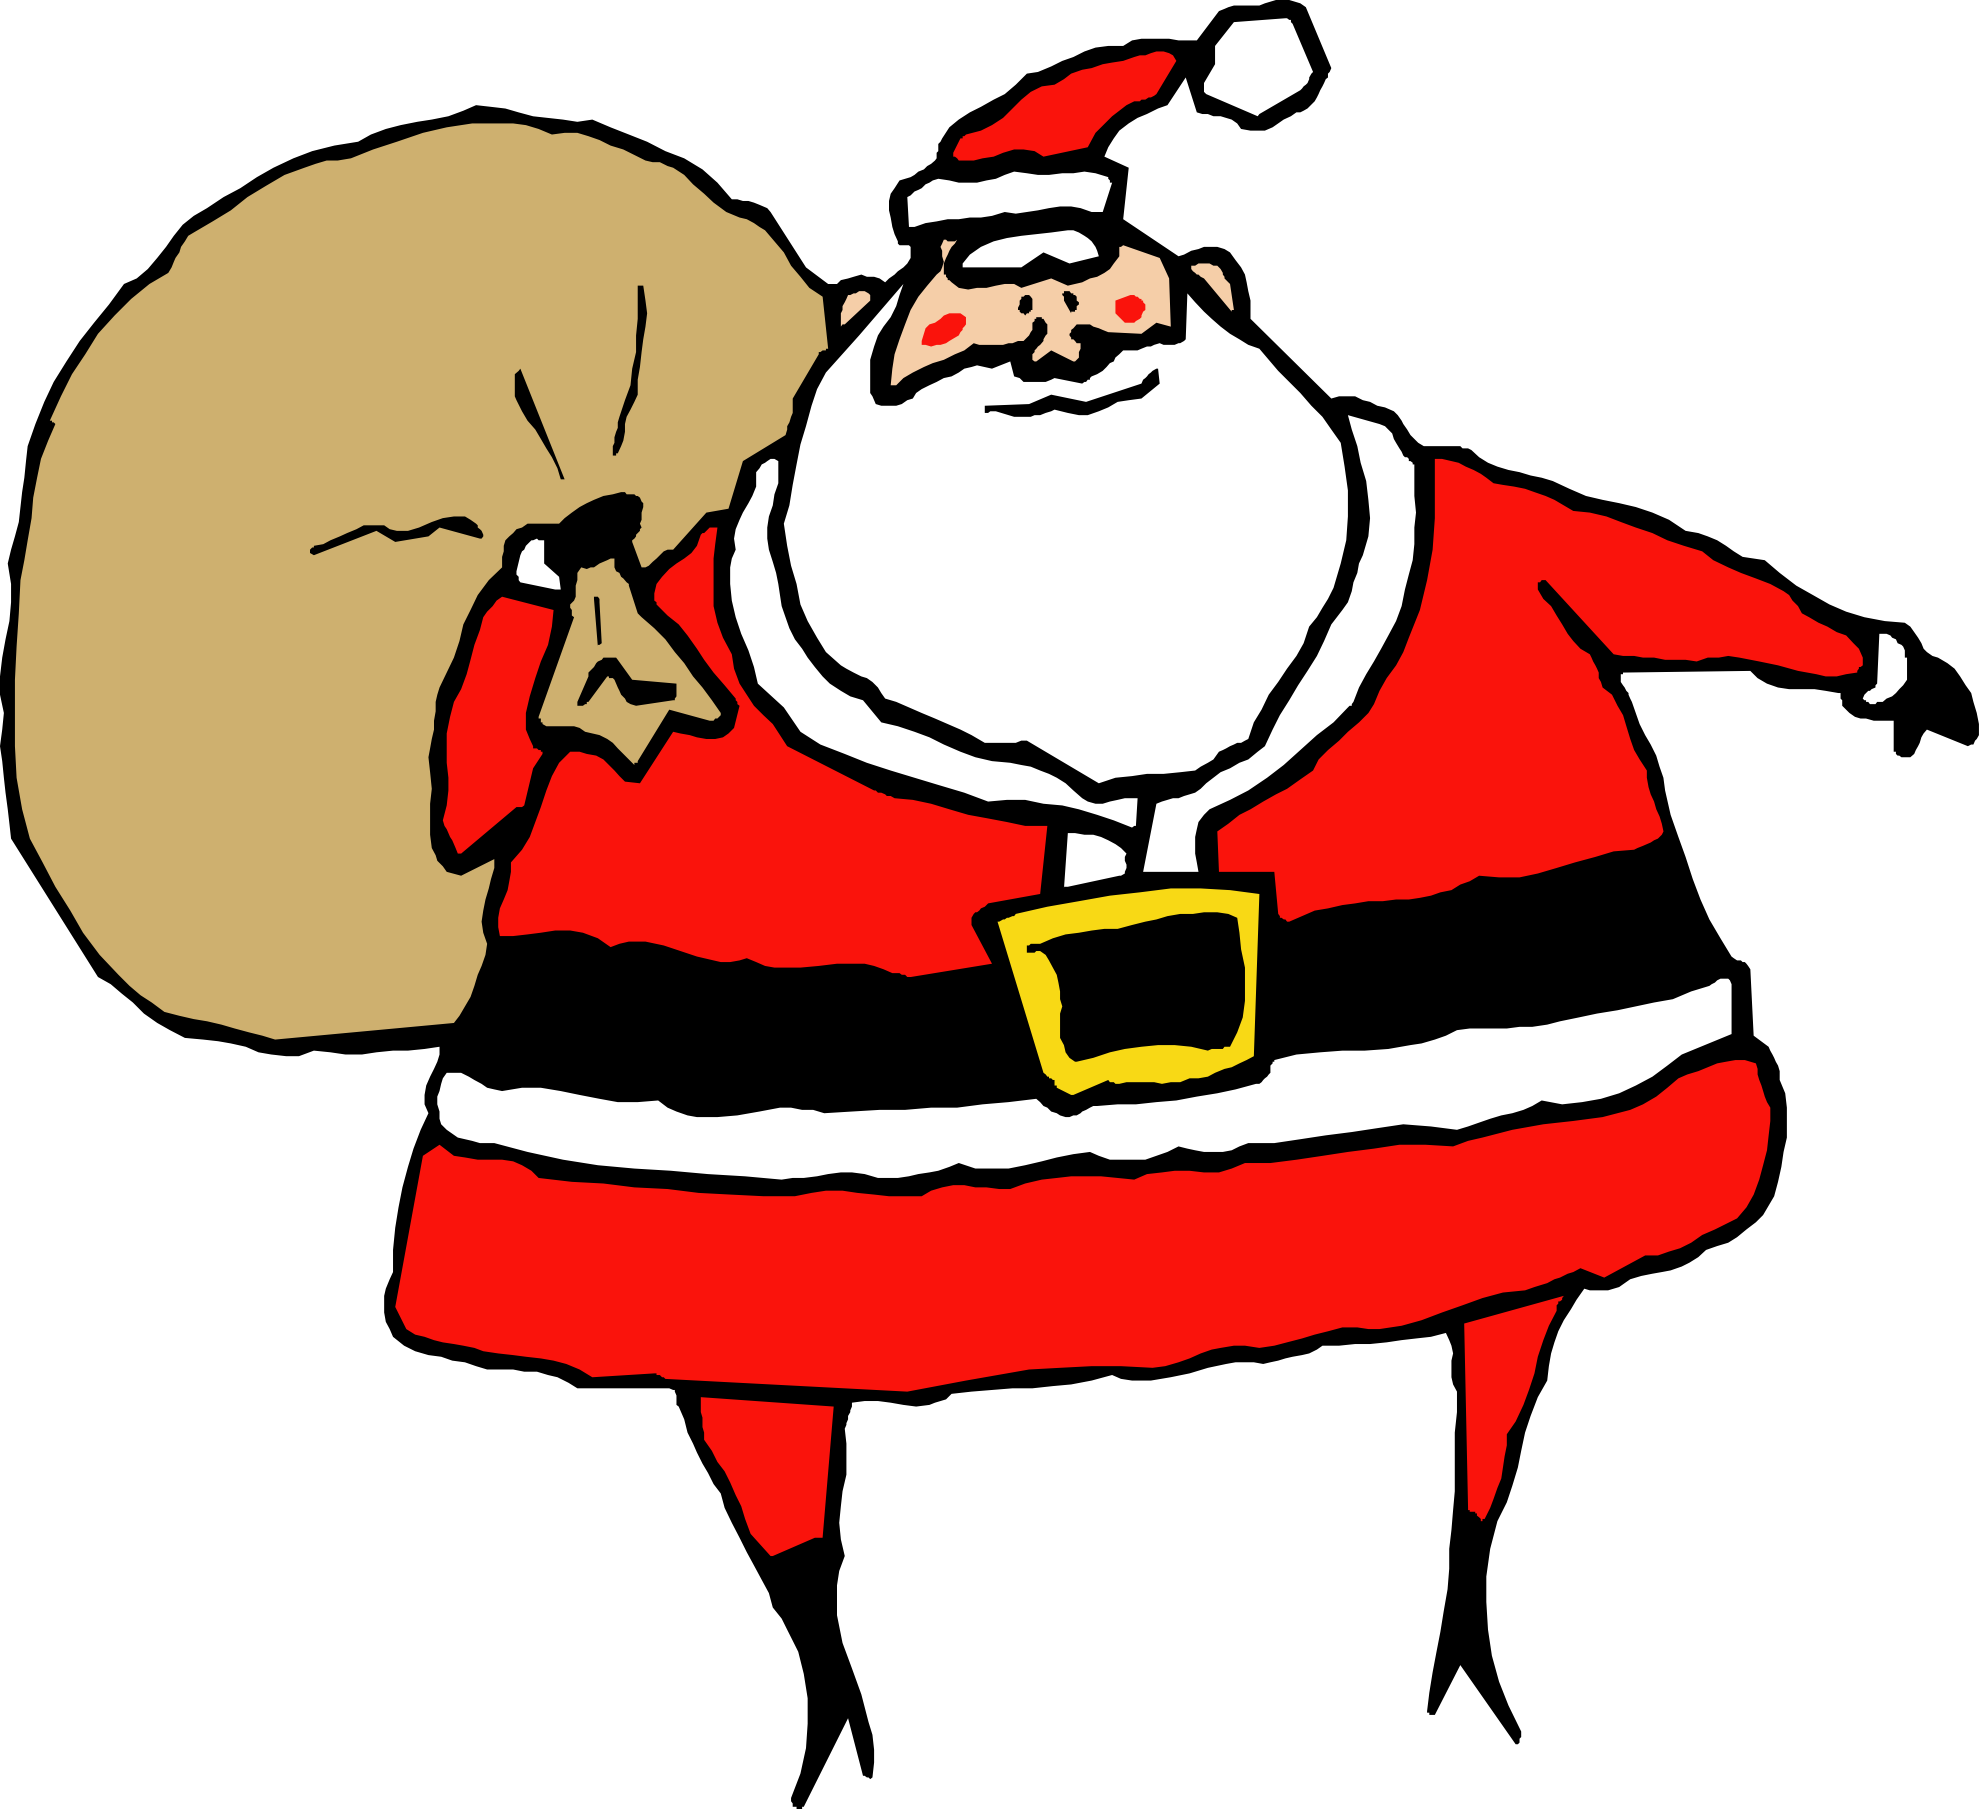 Fat santa drawing free image download